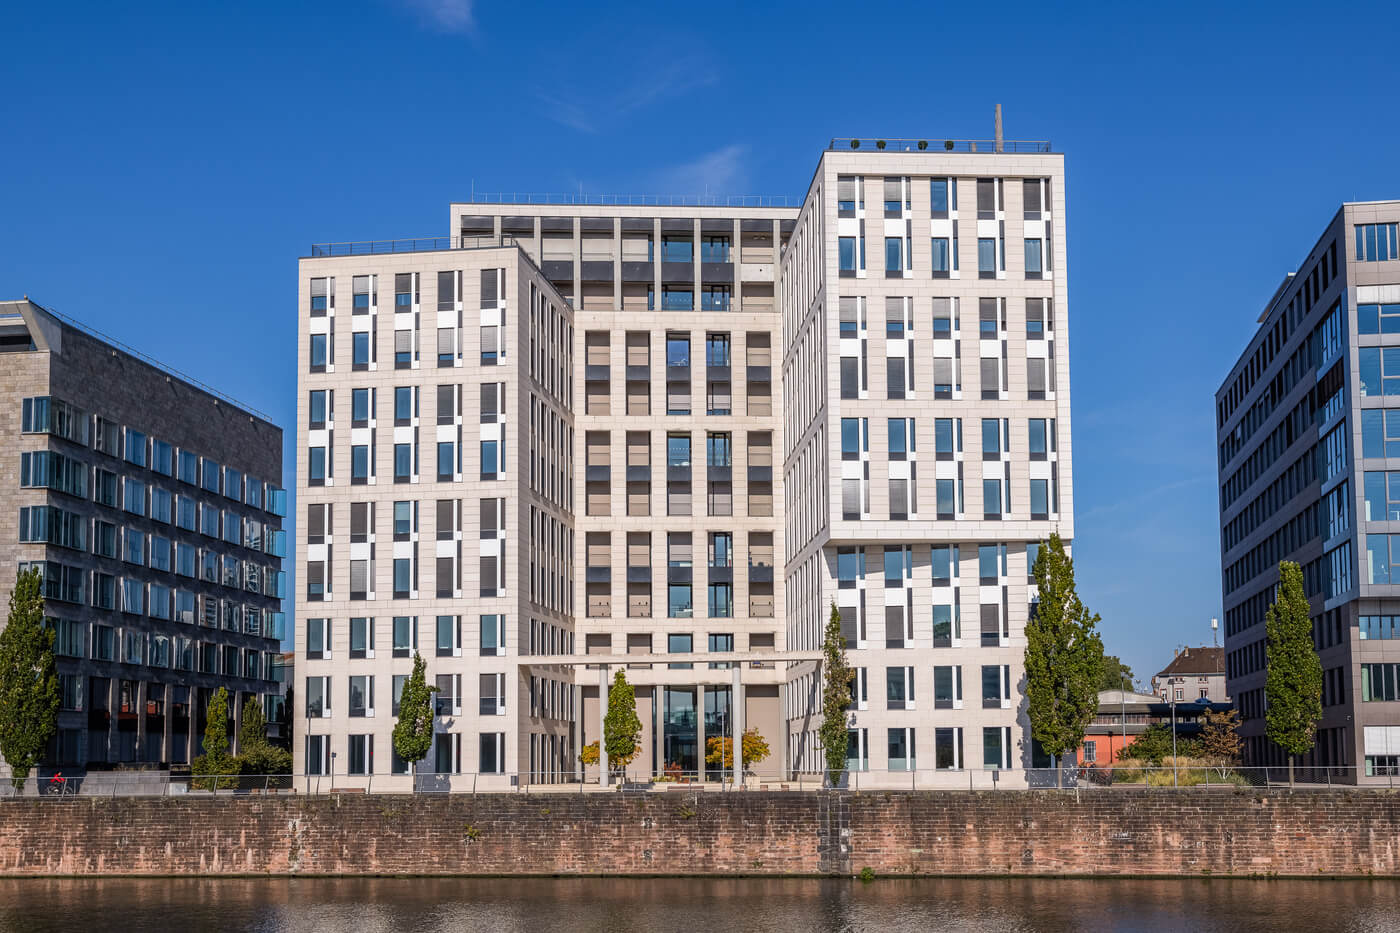 Objekt: Bürogebäude Ort: Frankfurt am Main Baujahr: 2010 Gewerke: Heizung, Kälte